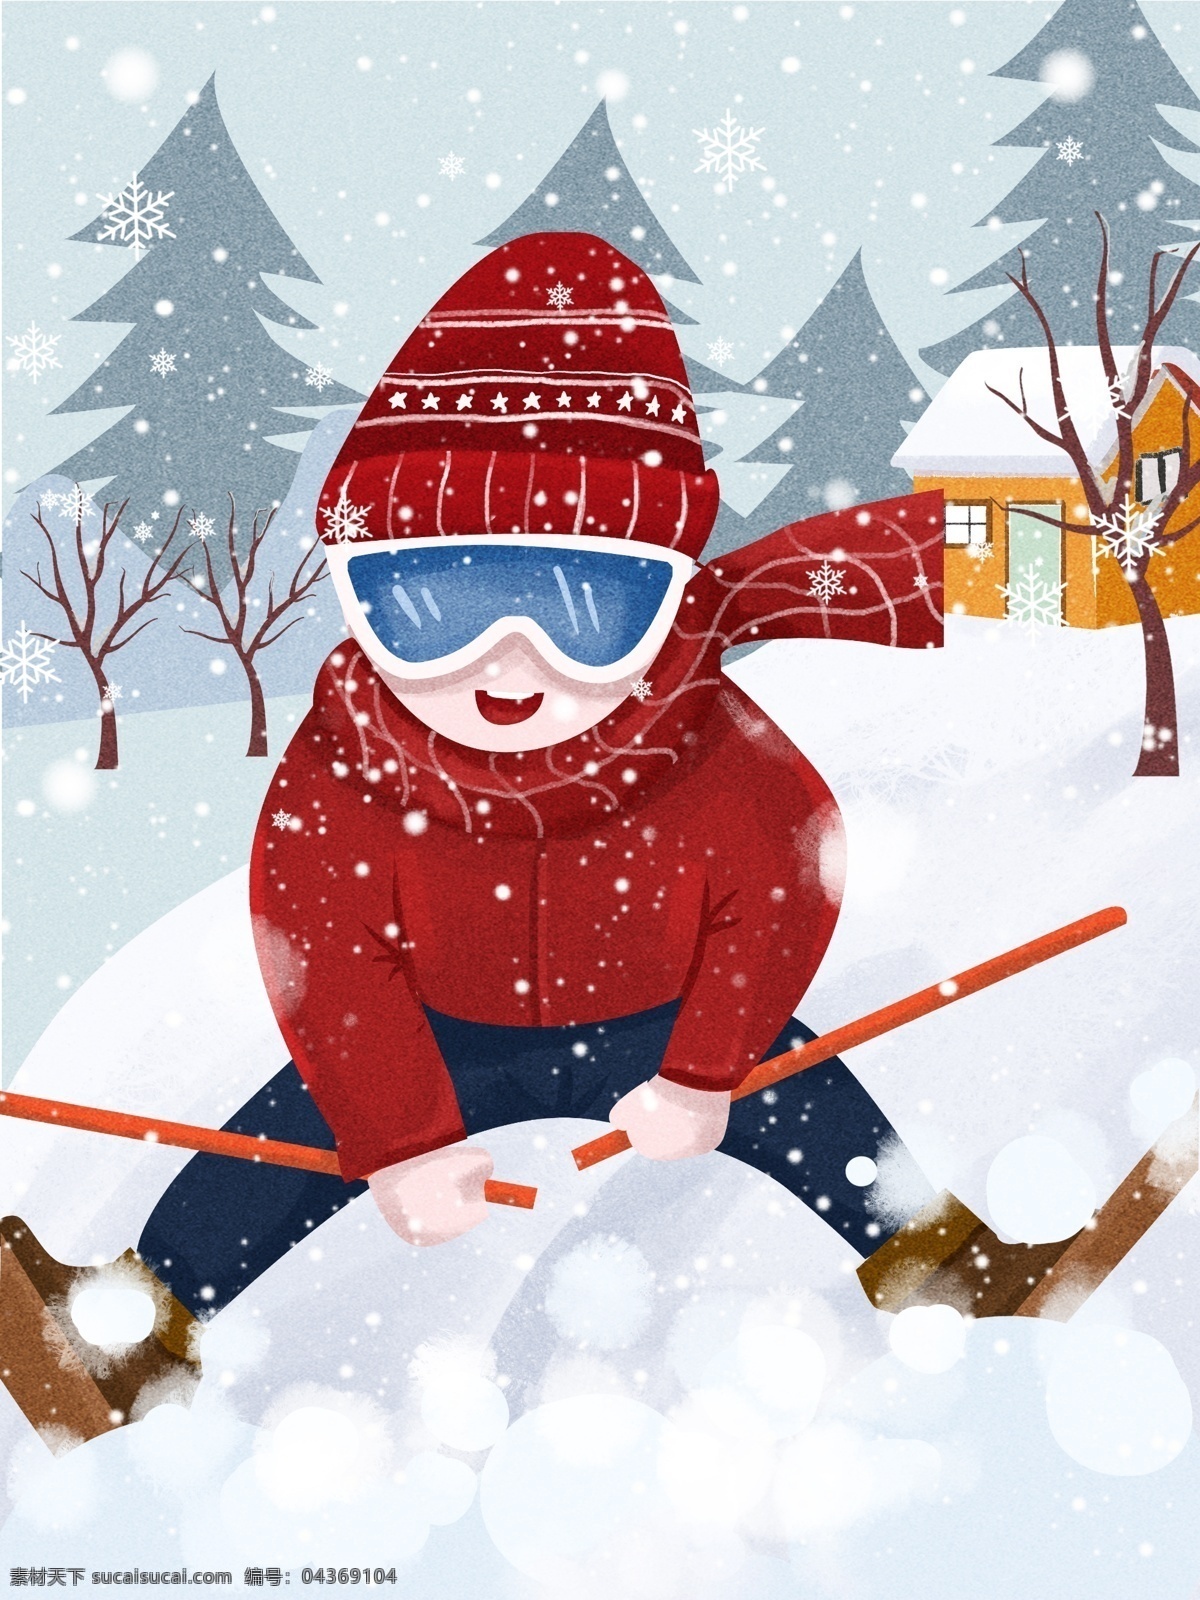 冬日 滑雪 场景 插画 户外运动 滑雪运动 雪景 房子 滑雪场景 滑雪女孩 树 雪 文章配图 手机媒介配图